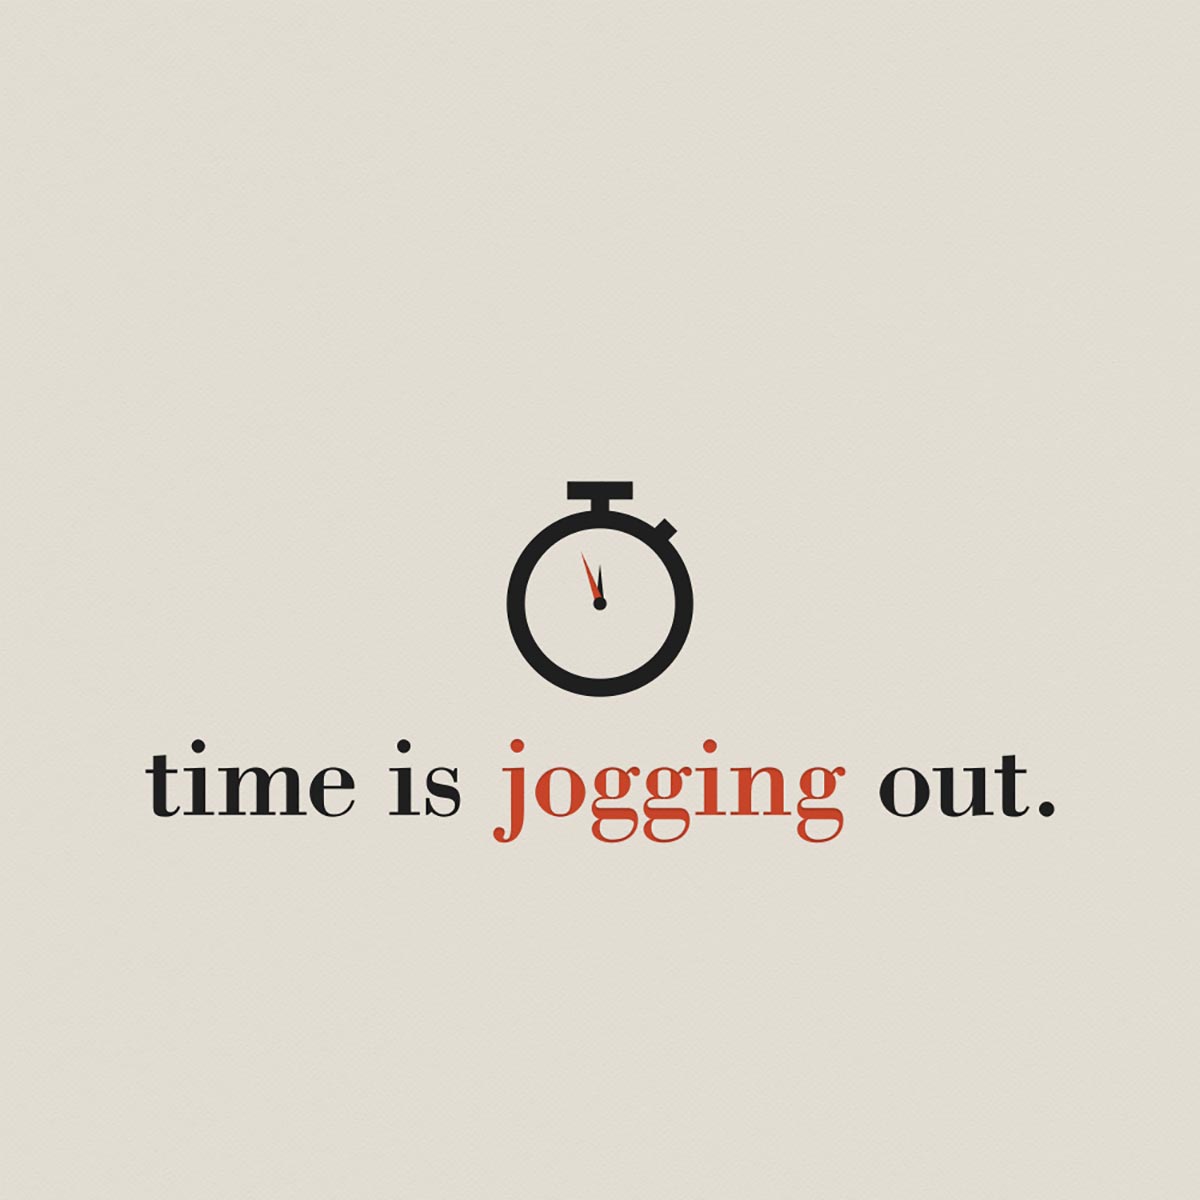 joggingout